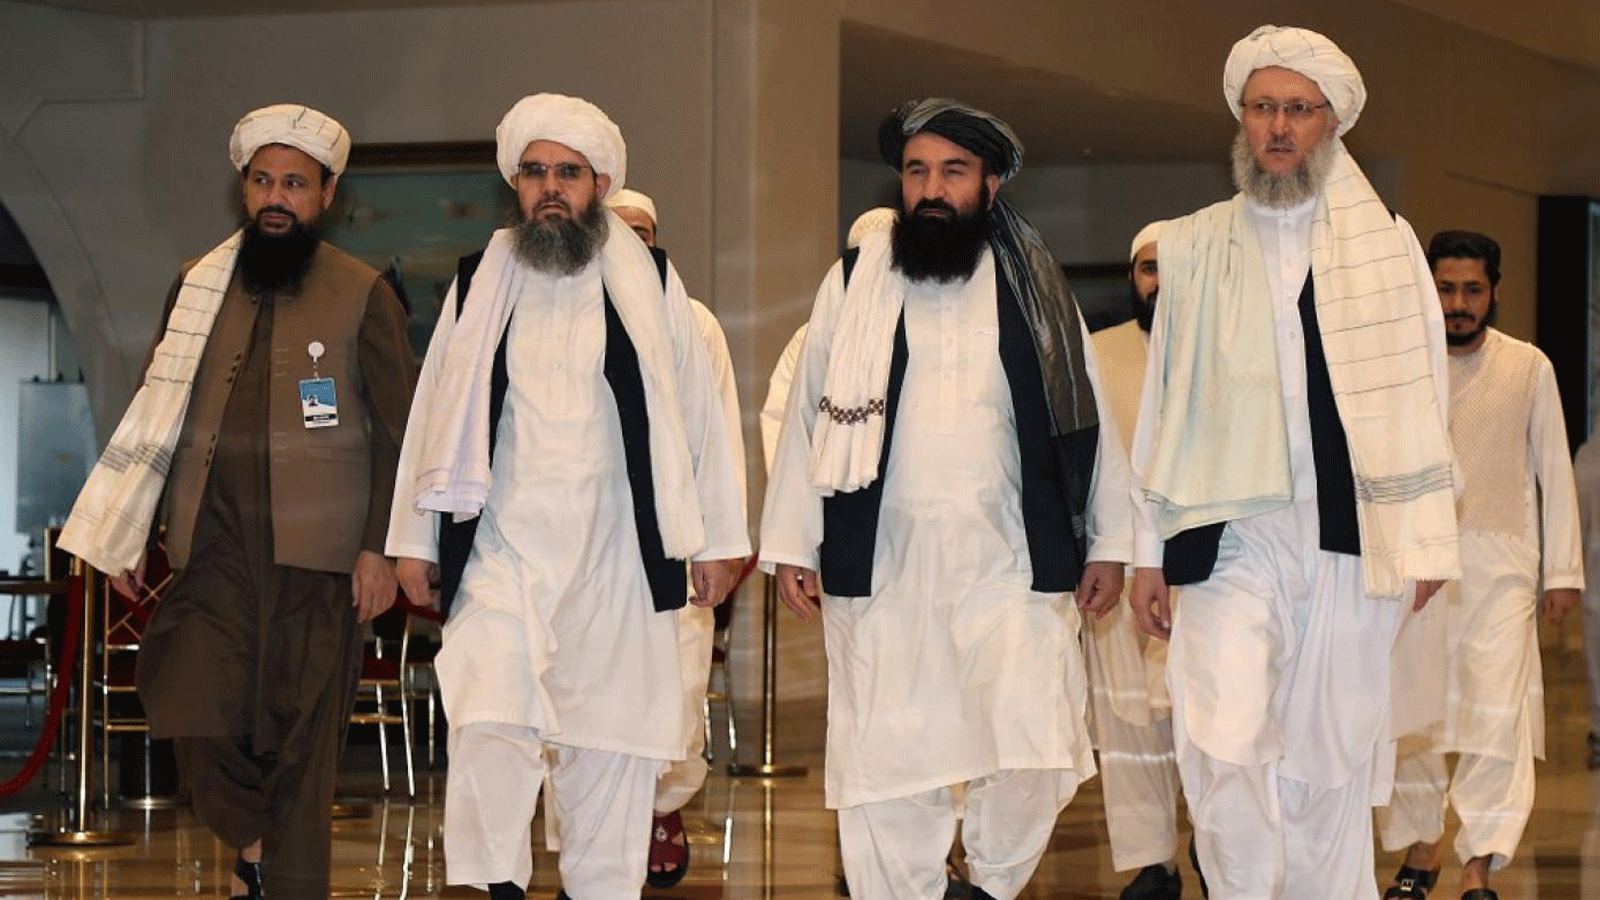 مسؤولو طالبان يسيرون في بهو الفندق خلال المحادثات في العاصمة القطرية الدوحة في 12 آب/ أغسطس 2021